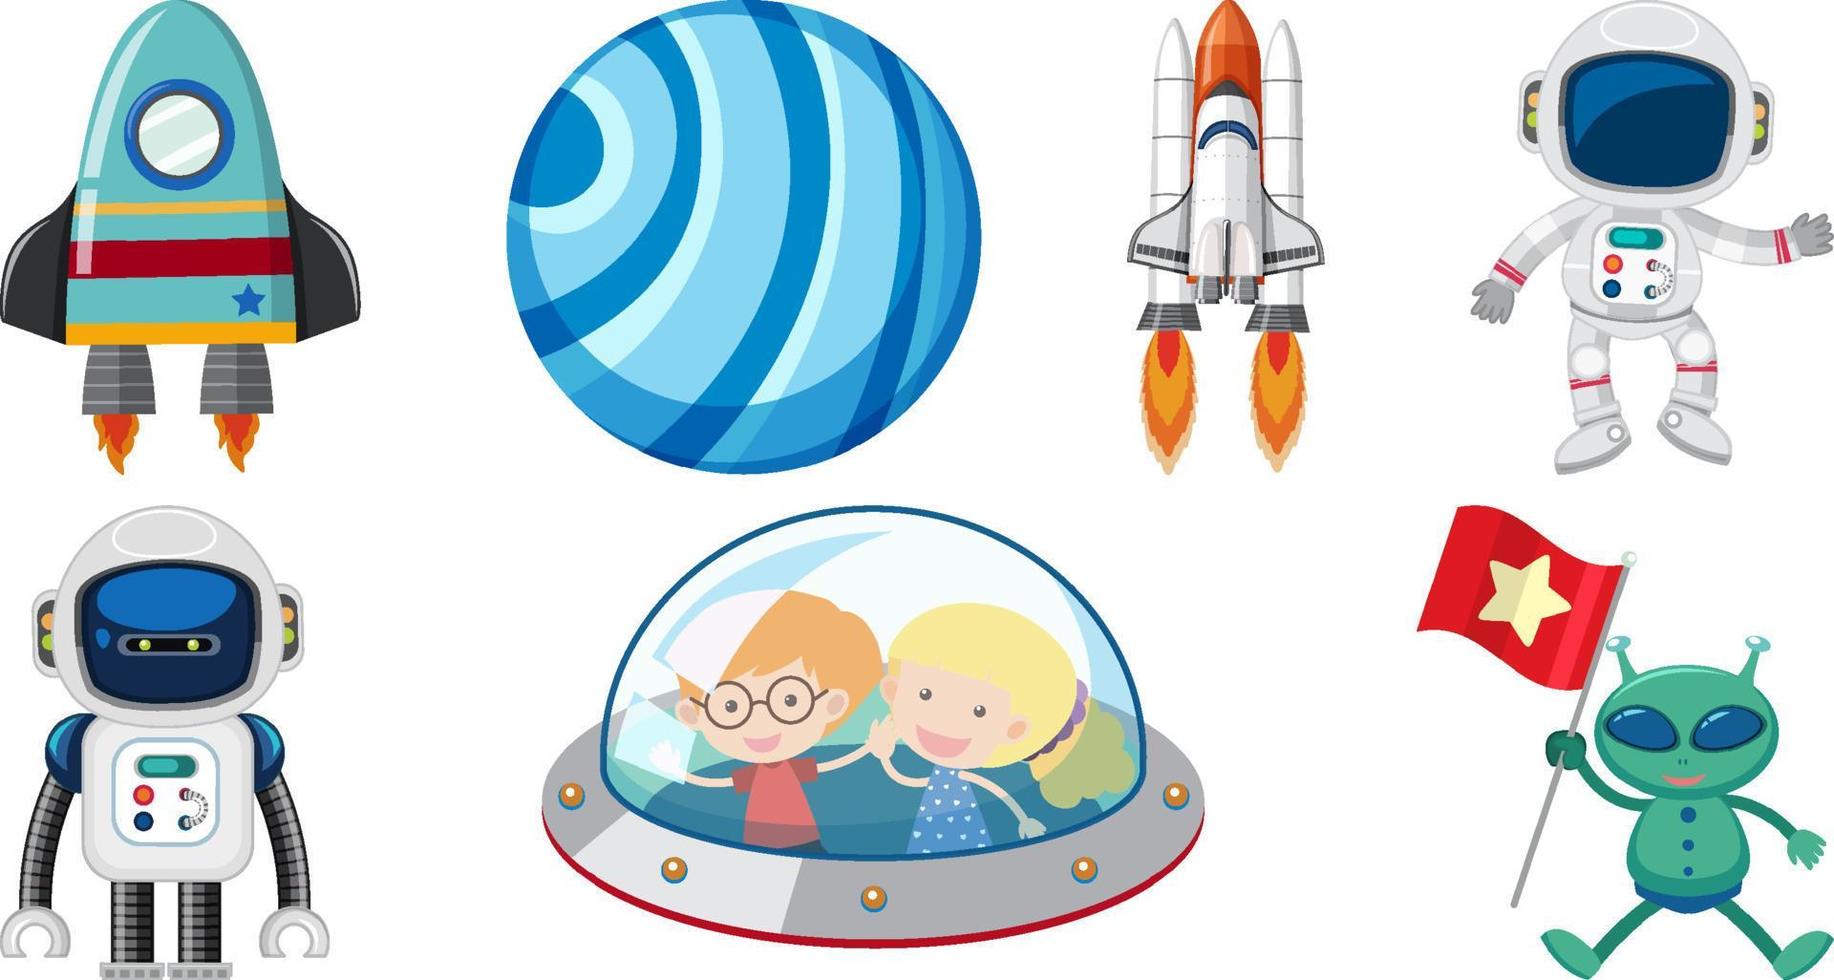 conjunto de objetos y personajes de dibujos animados espaciales vector